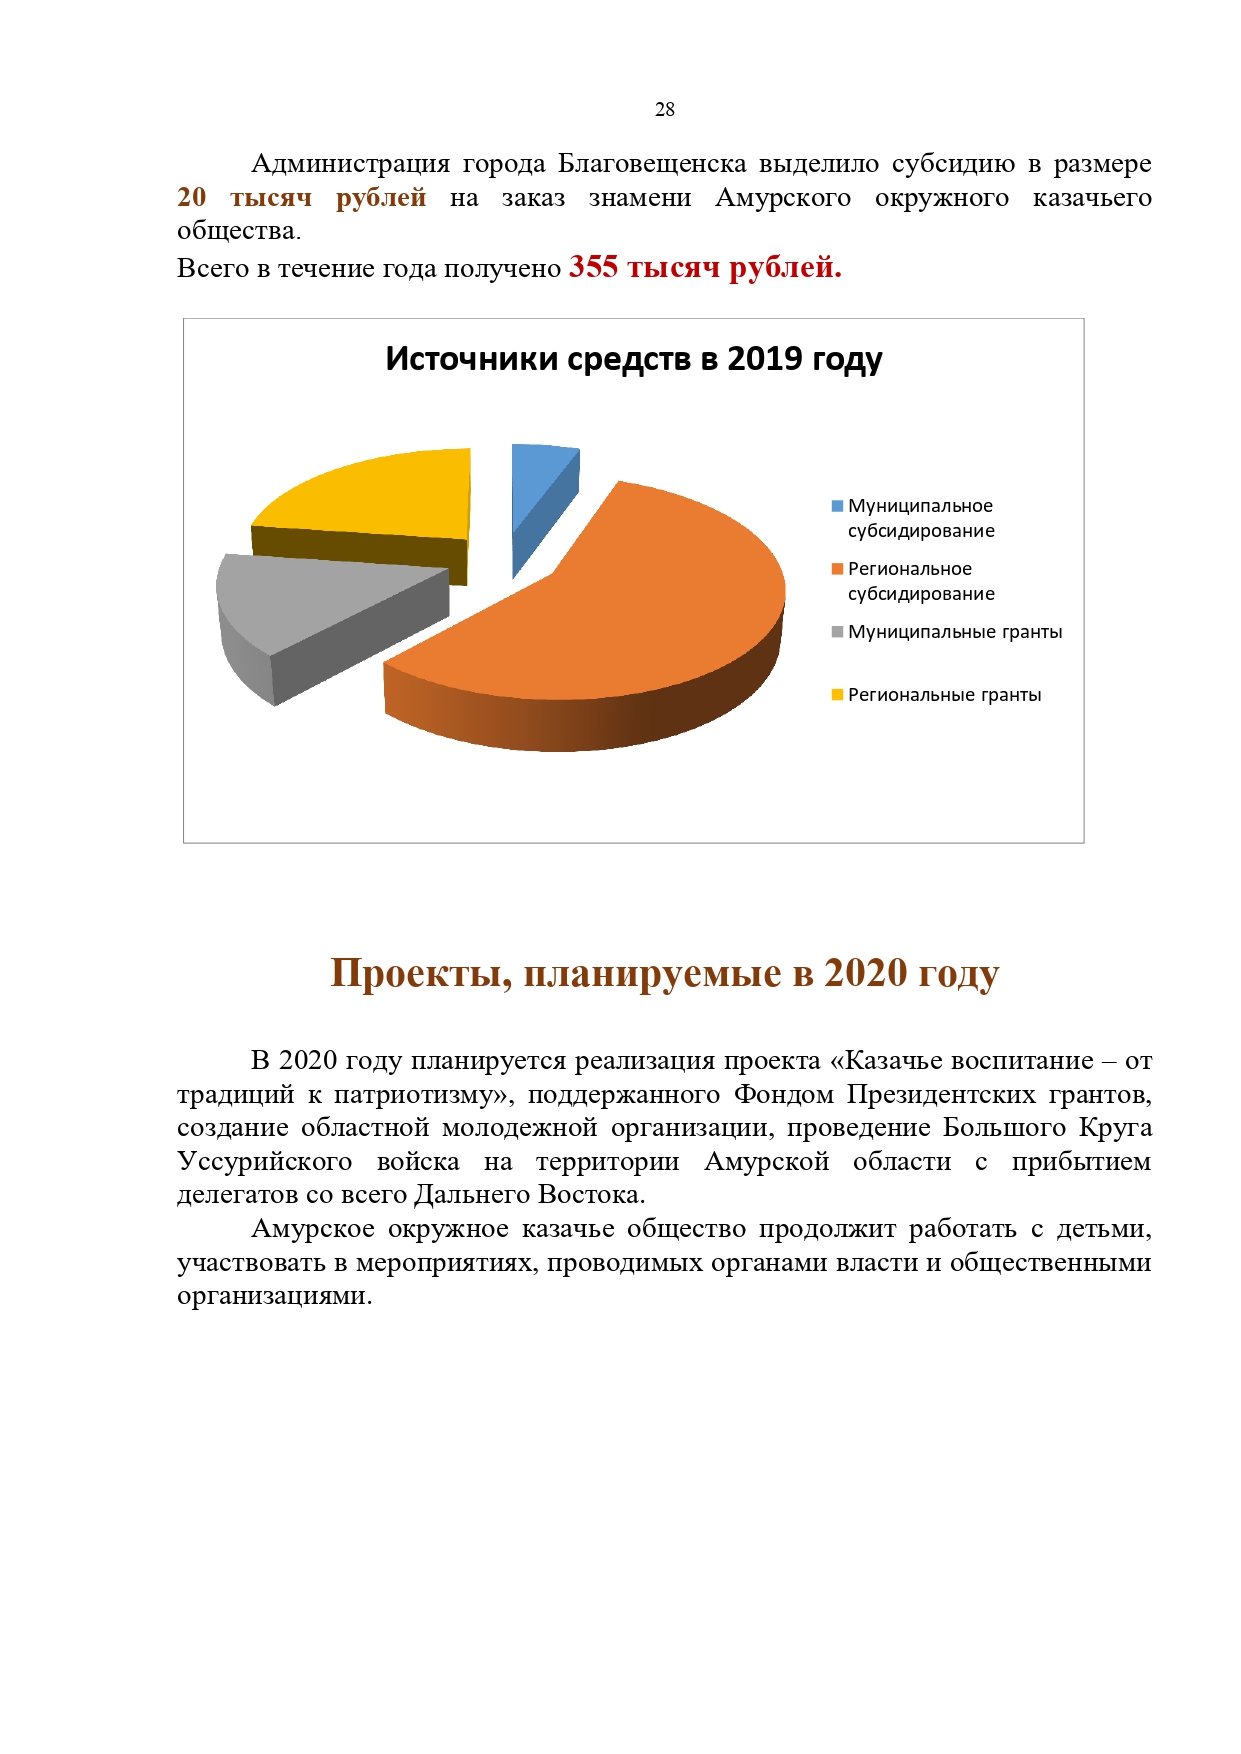 Публичный годовой отчет Амурского окружного казачьего общества за 2019 год Page 0028